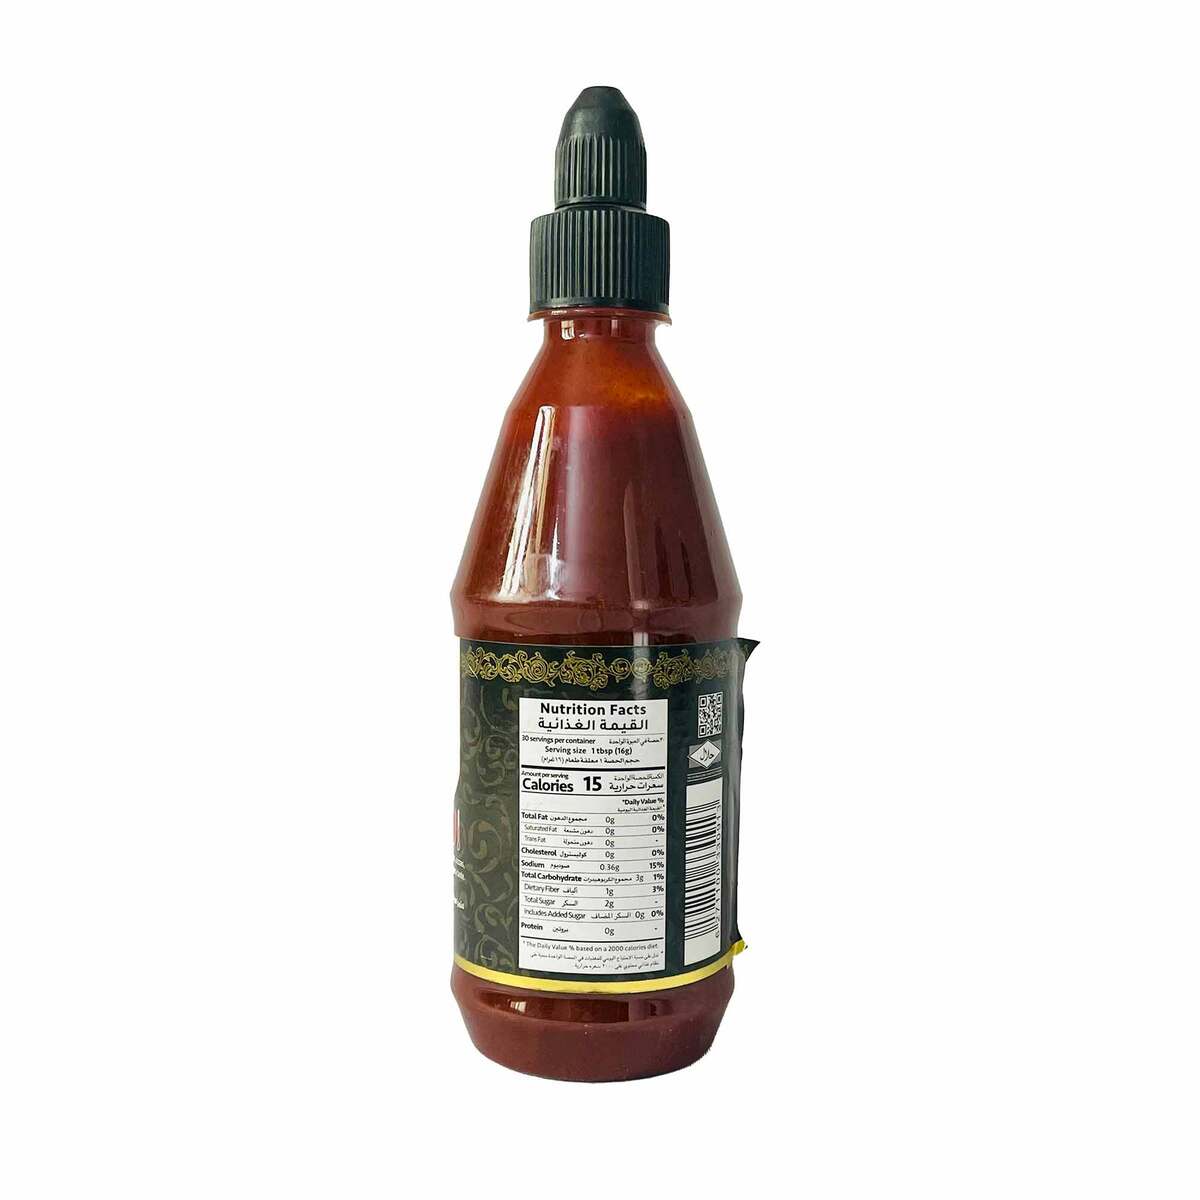 MF Sriracha Hot Chili Sauce 435 ml